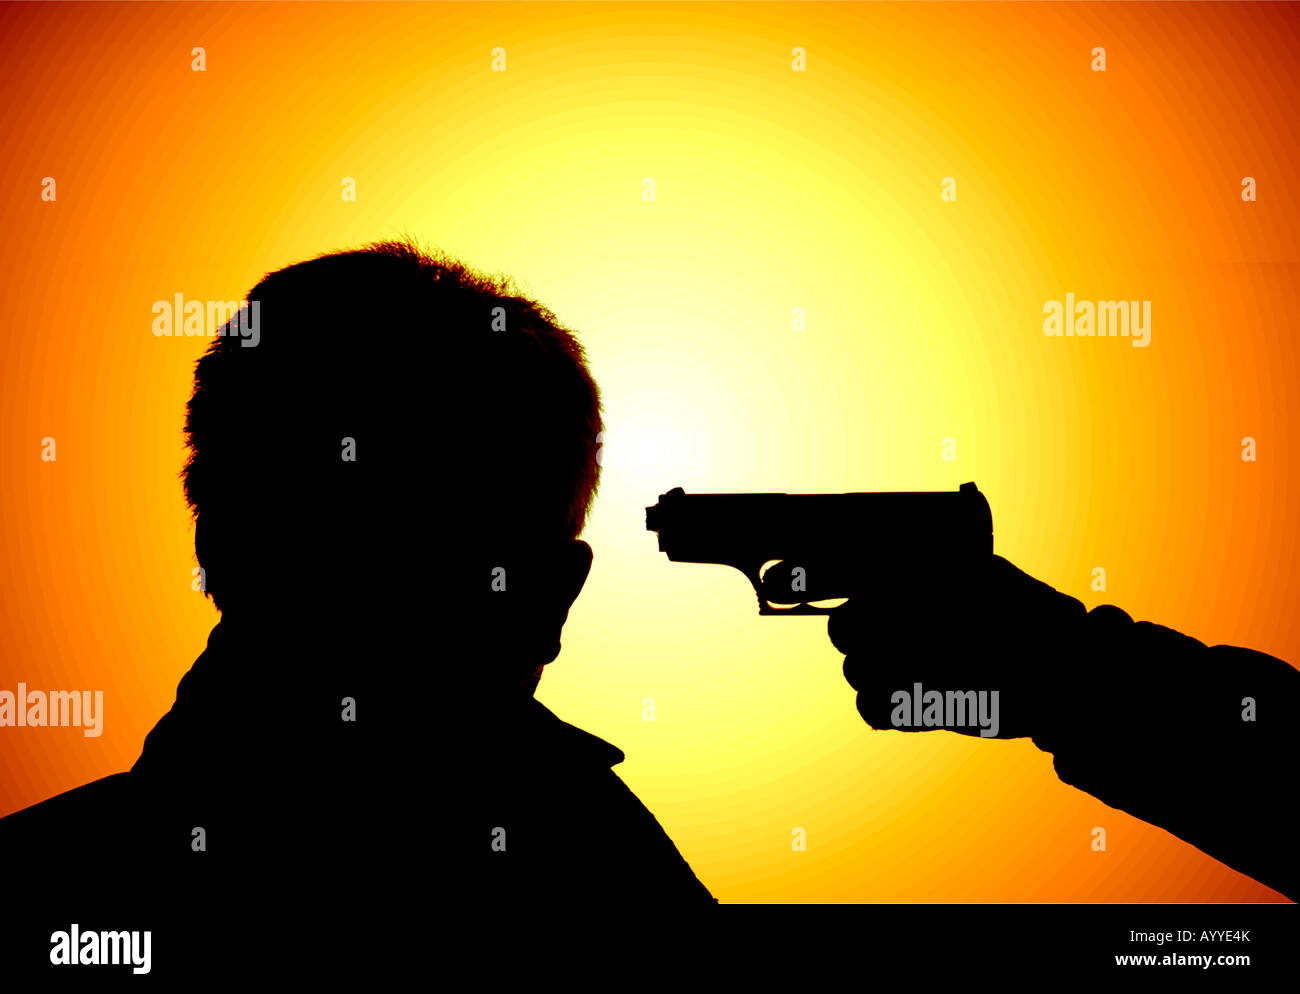 Silhouette der Handfeuerwaffe am Kopf des Menschen Stockfoto